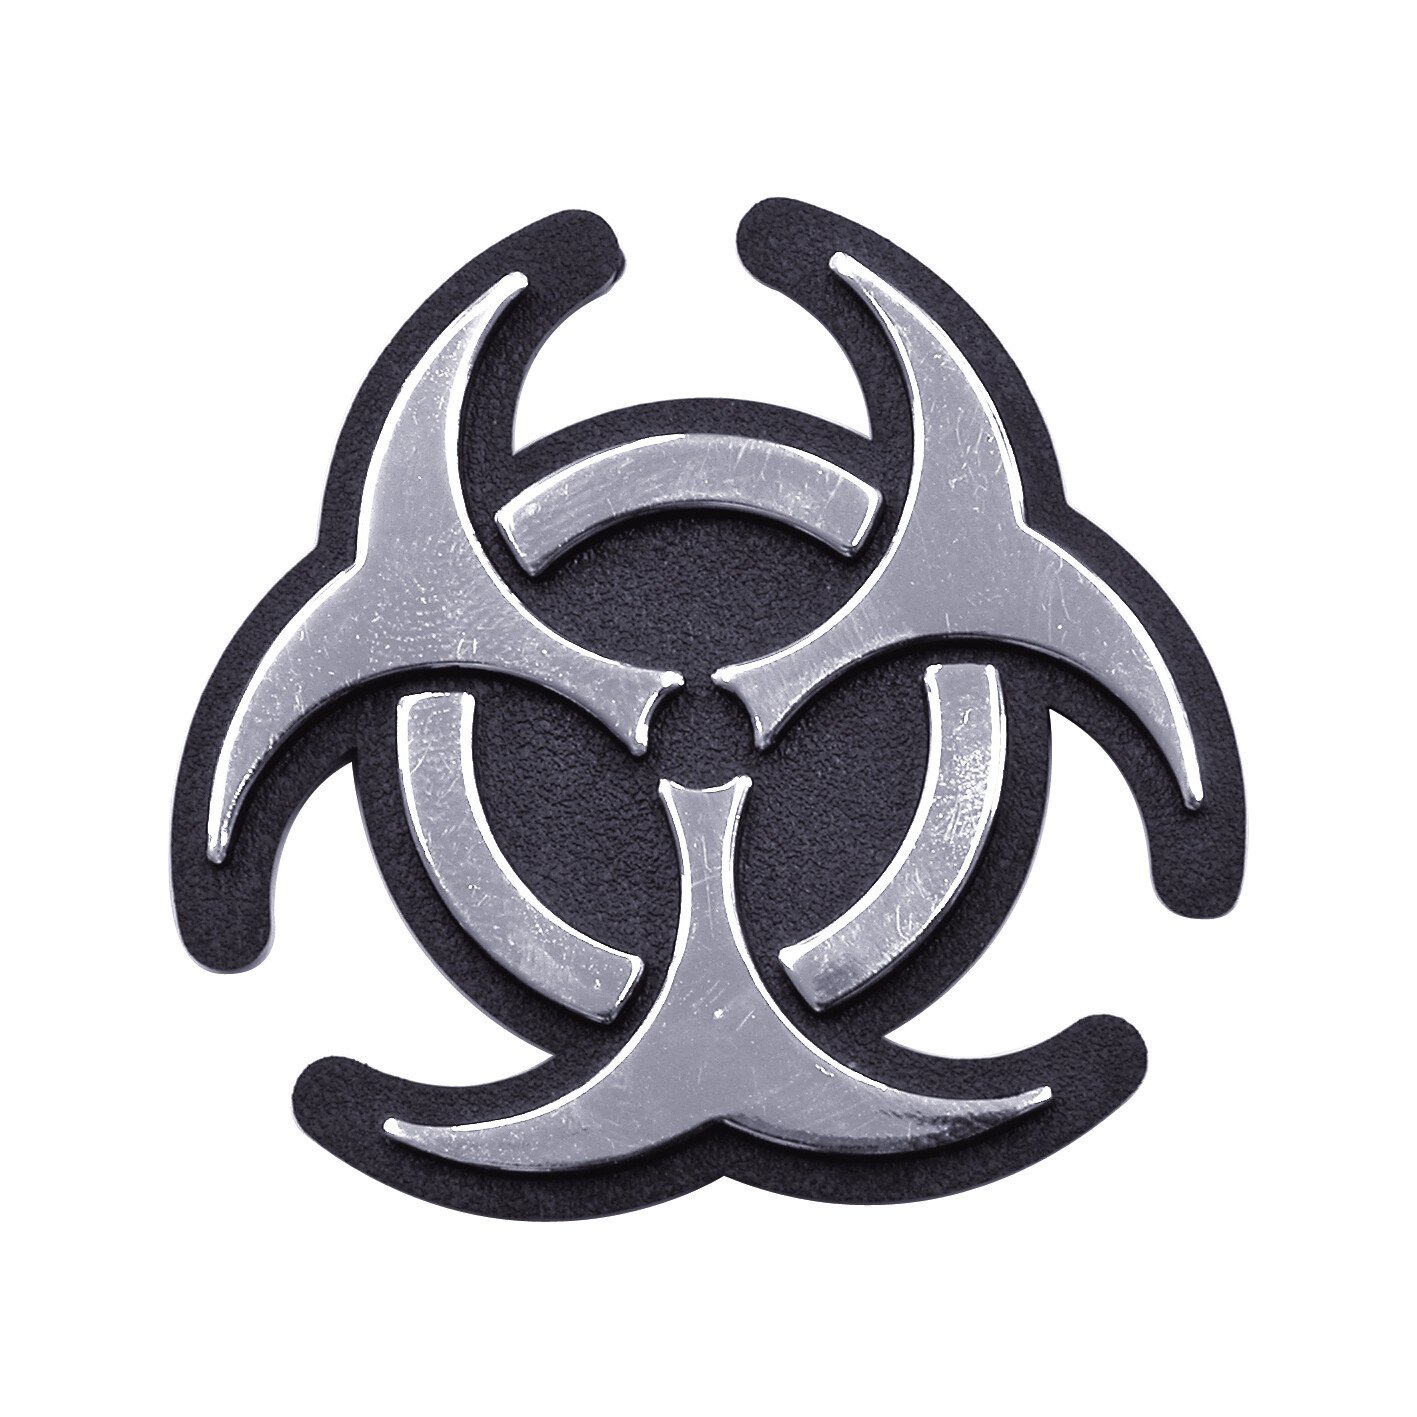 Carpoint Chromed 3D emblem - Bio Hazard thumb